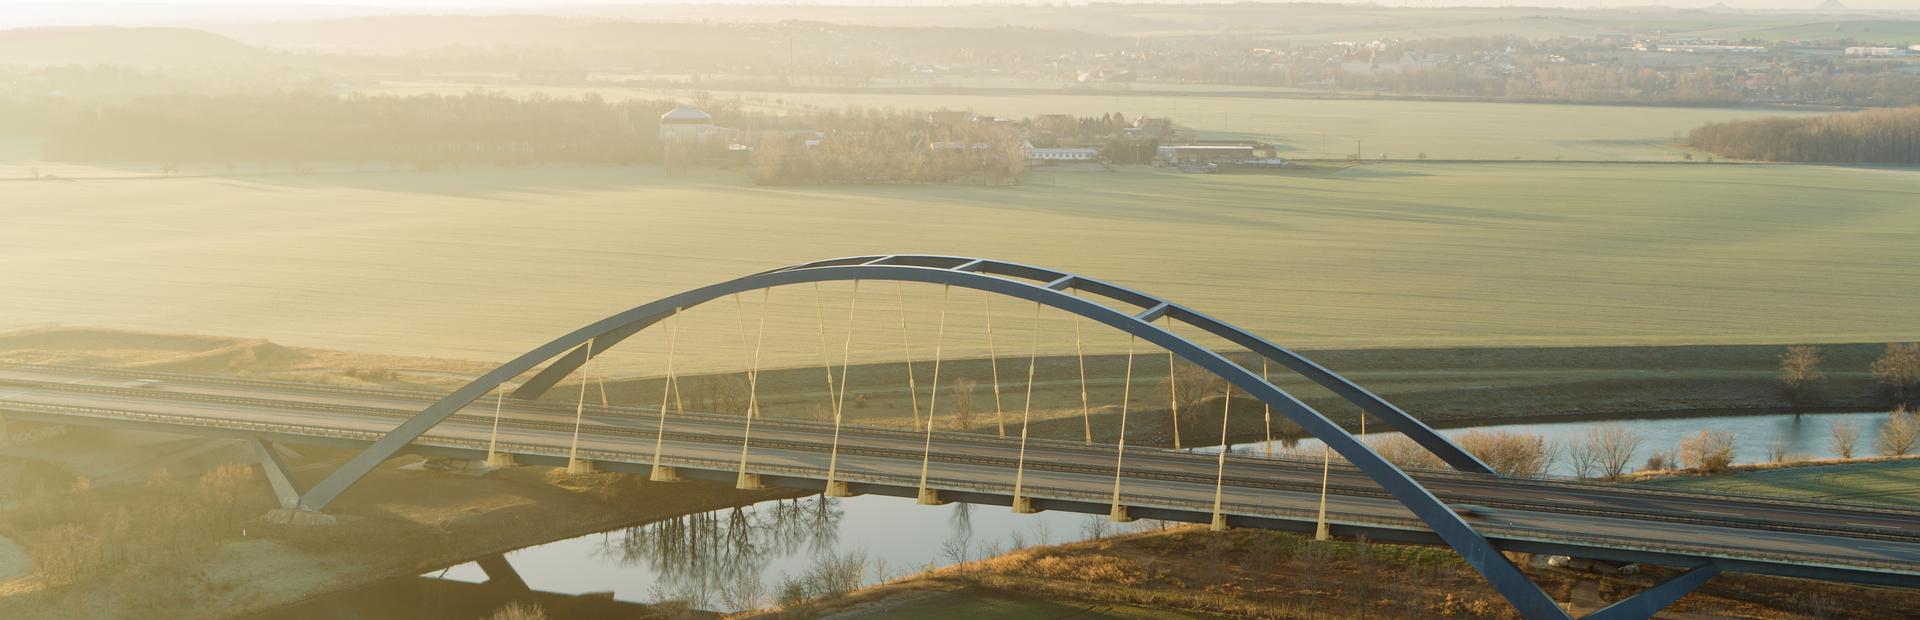 Luftaufnahme einer Autobahnbrücke, die über einen Fluss führt. Ringsum sind grüne Felder. 